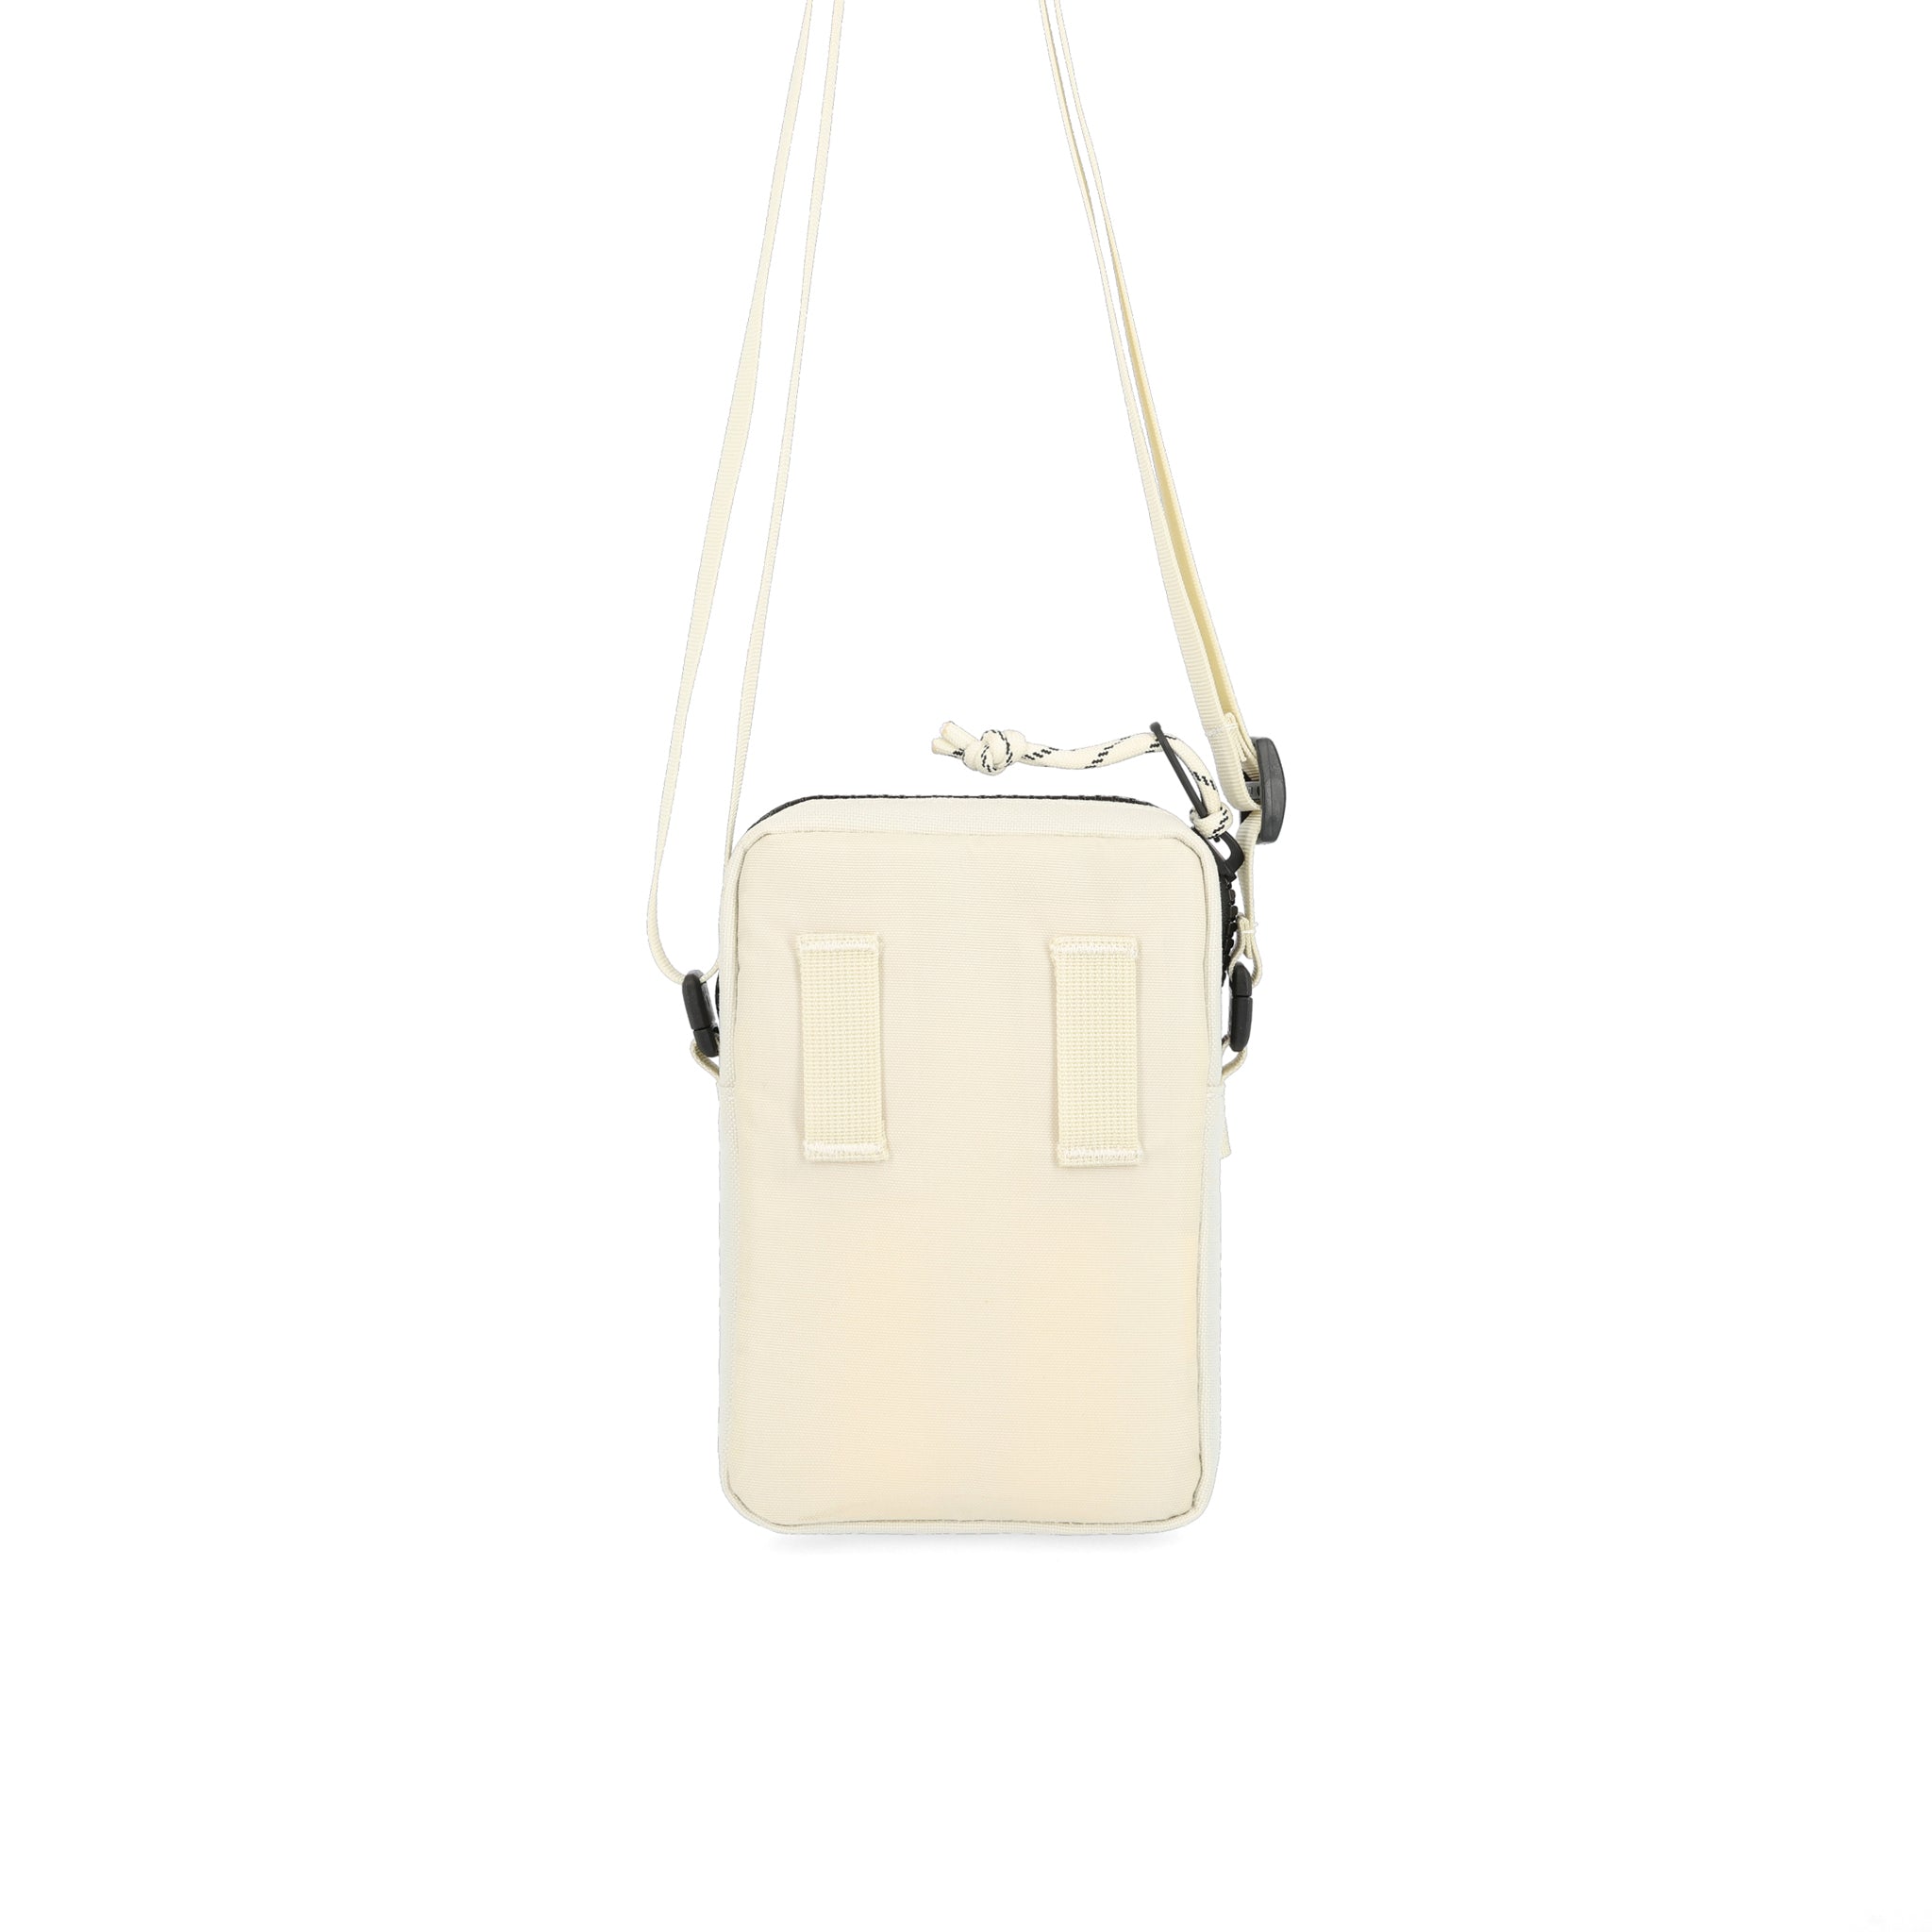 Small handbag/Shoulder bag